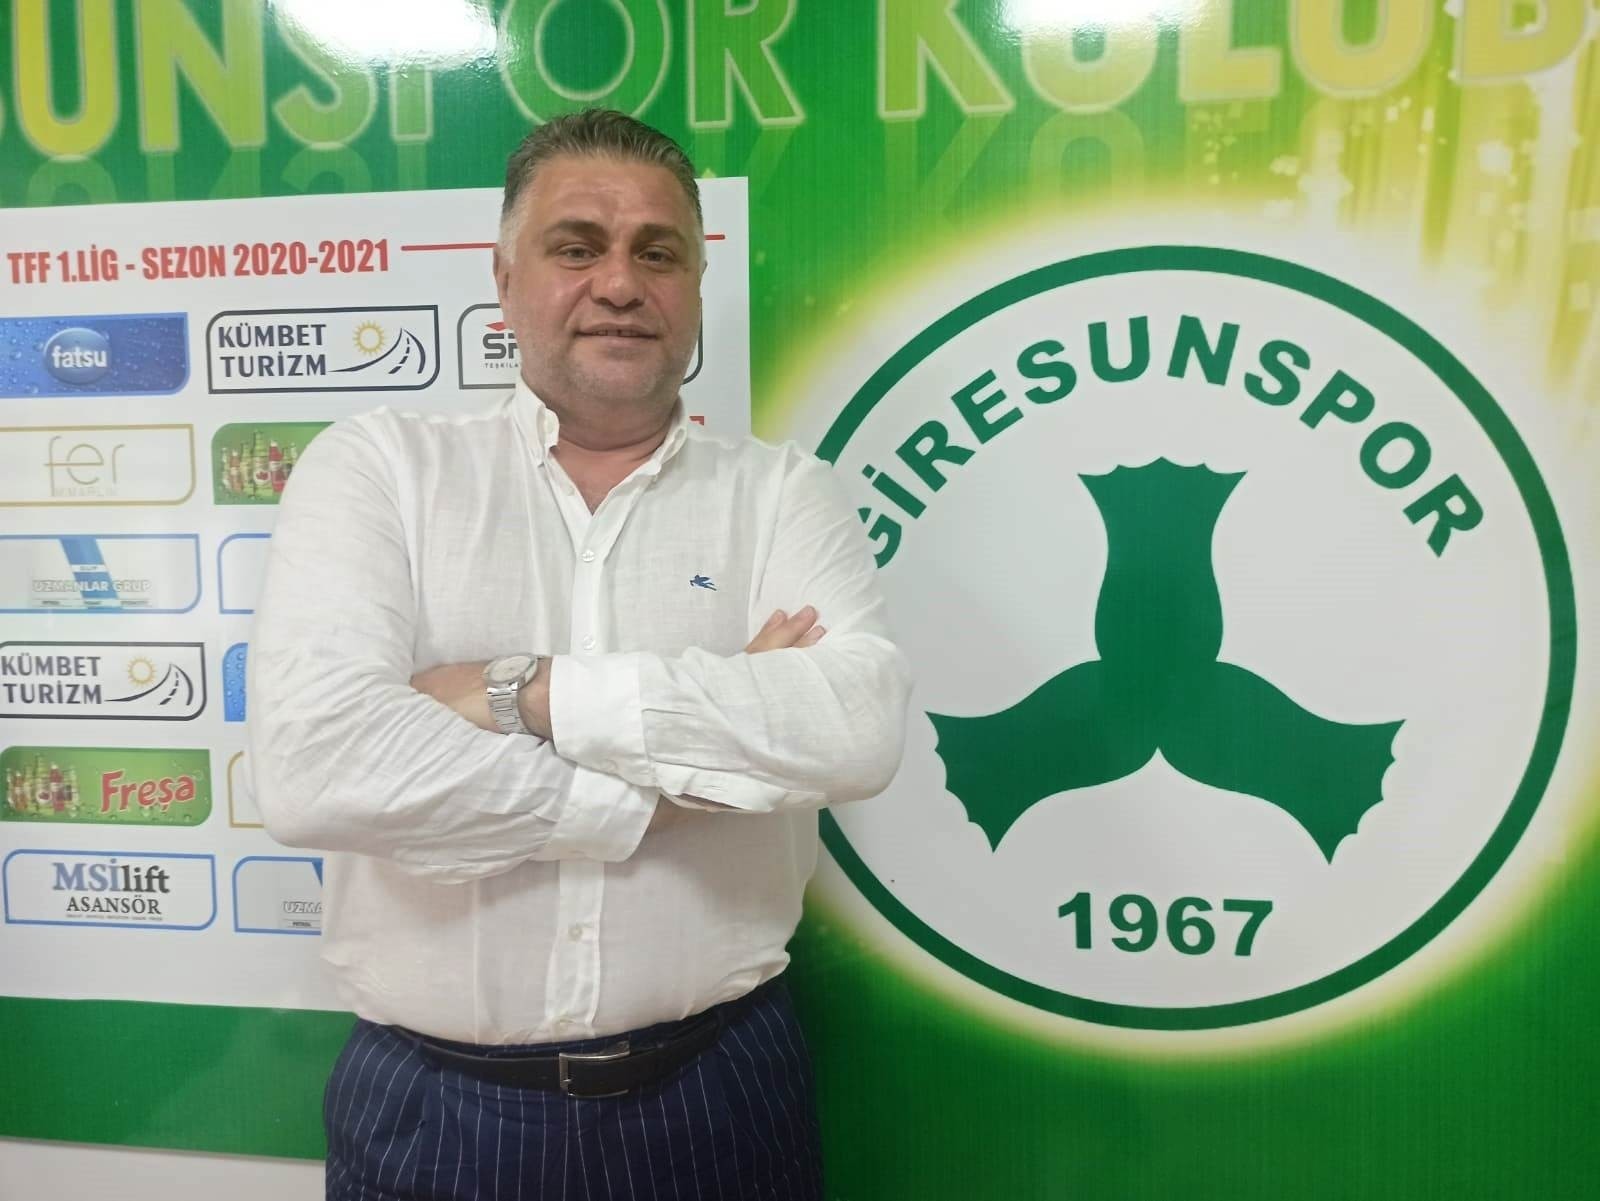 GZT Giresunspor, Alanyaspor maçıyla yeni bir sayfa açmak istiyor